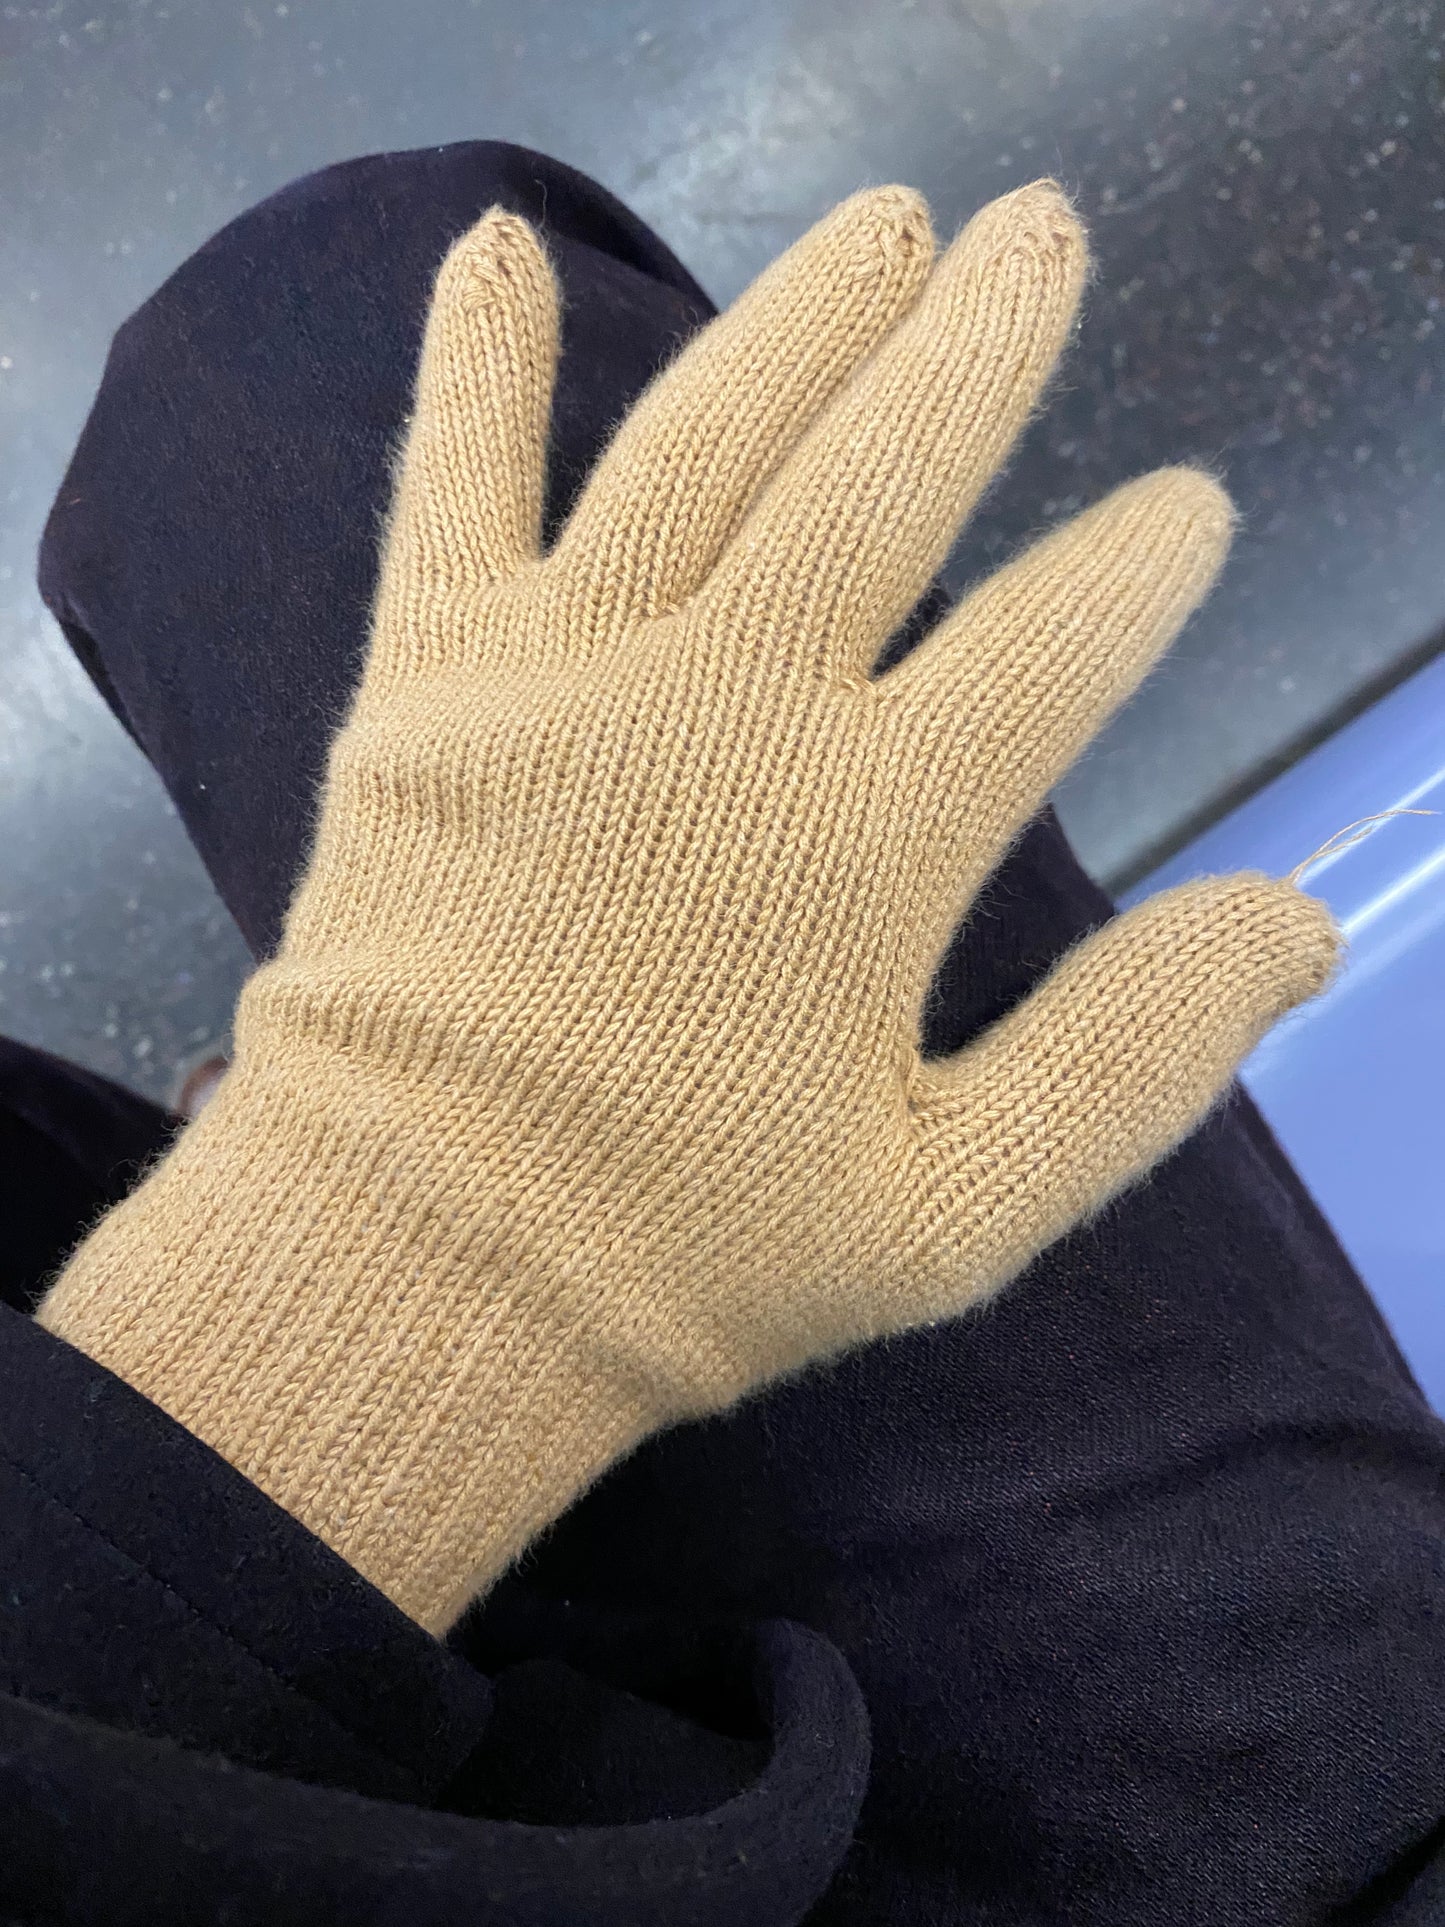 Undyed Brown Cotton Gloves